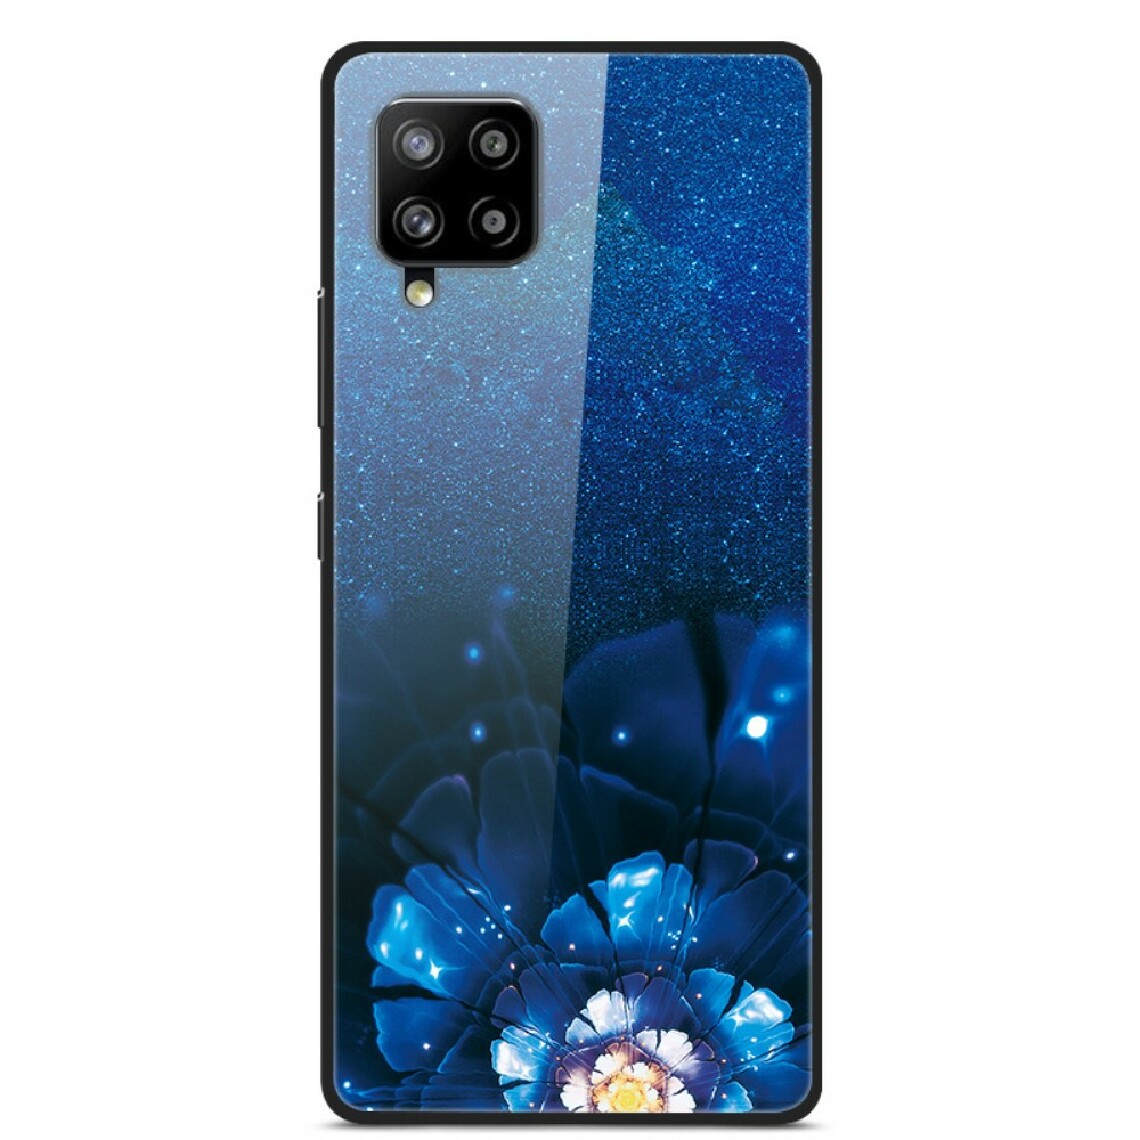 Other - Coque en TPU verre d'impression de style fantaisie fleur bleue pour votre Samsung Galaxy A42 5G - Coque, étui smartphone